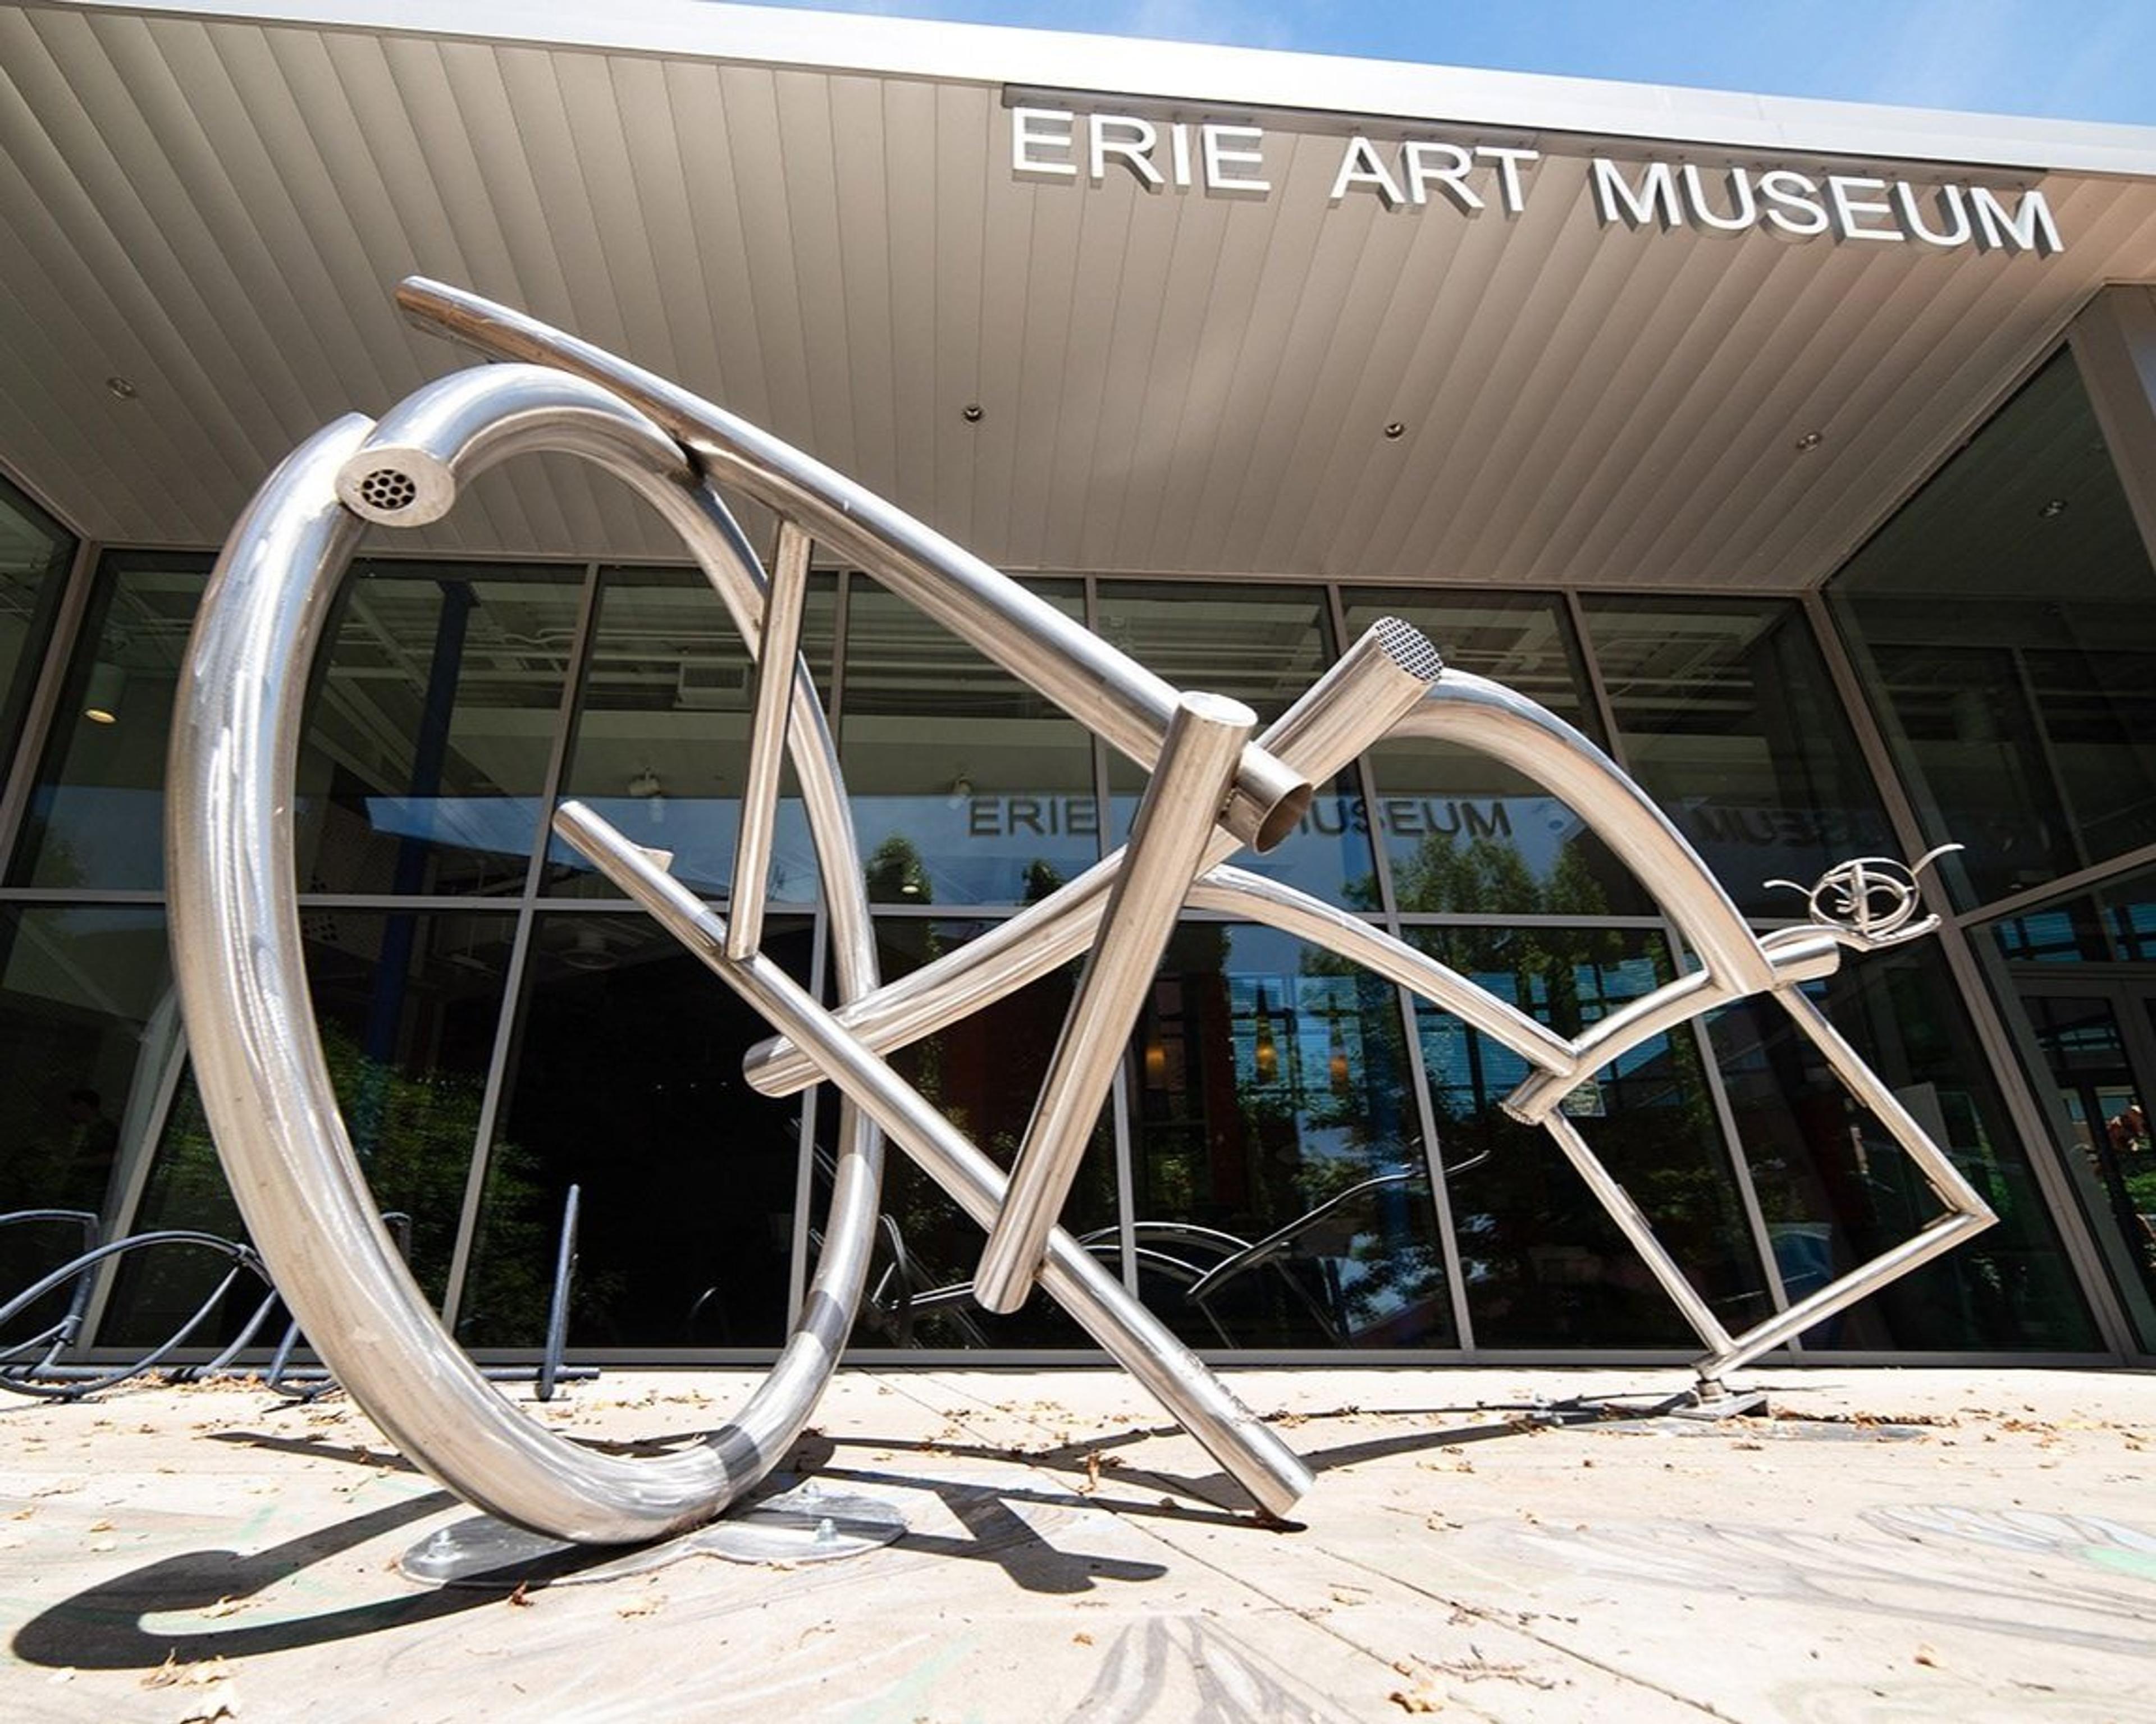 Erie Art Museum in Erie Pennsylvania